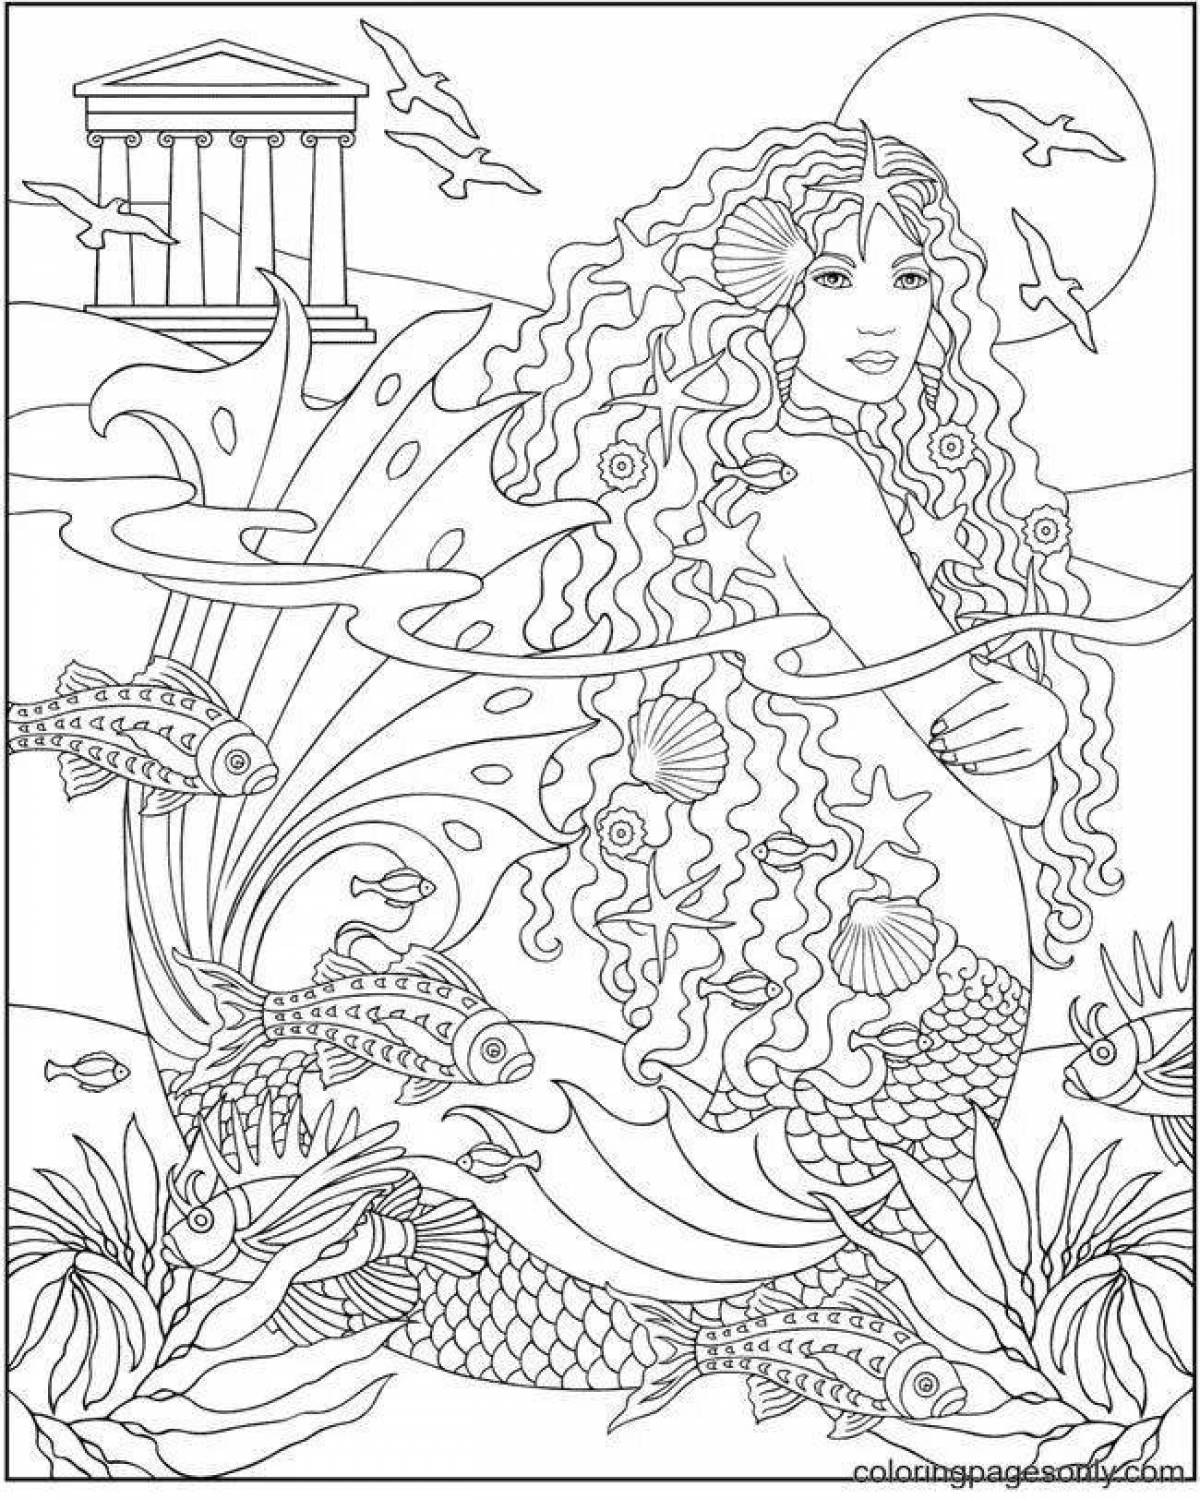 Exotic anti-stress mermaid coloring book